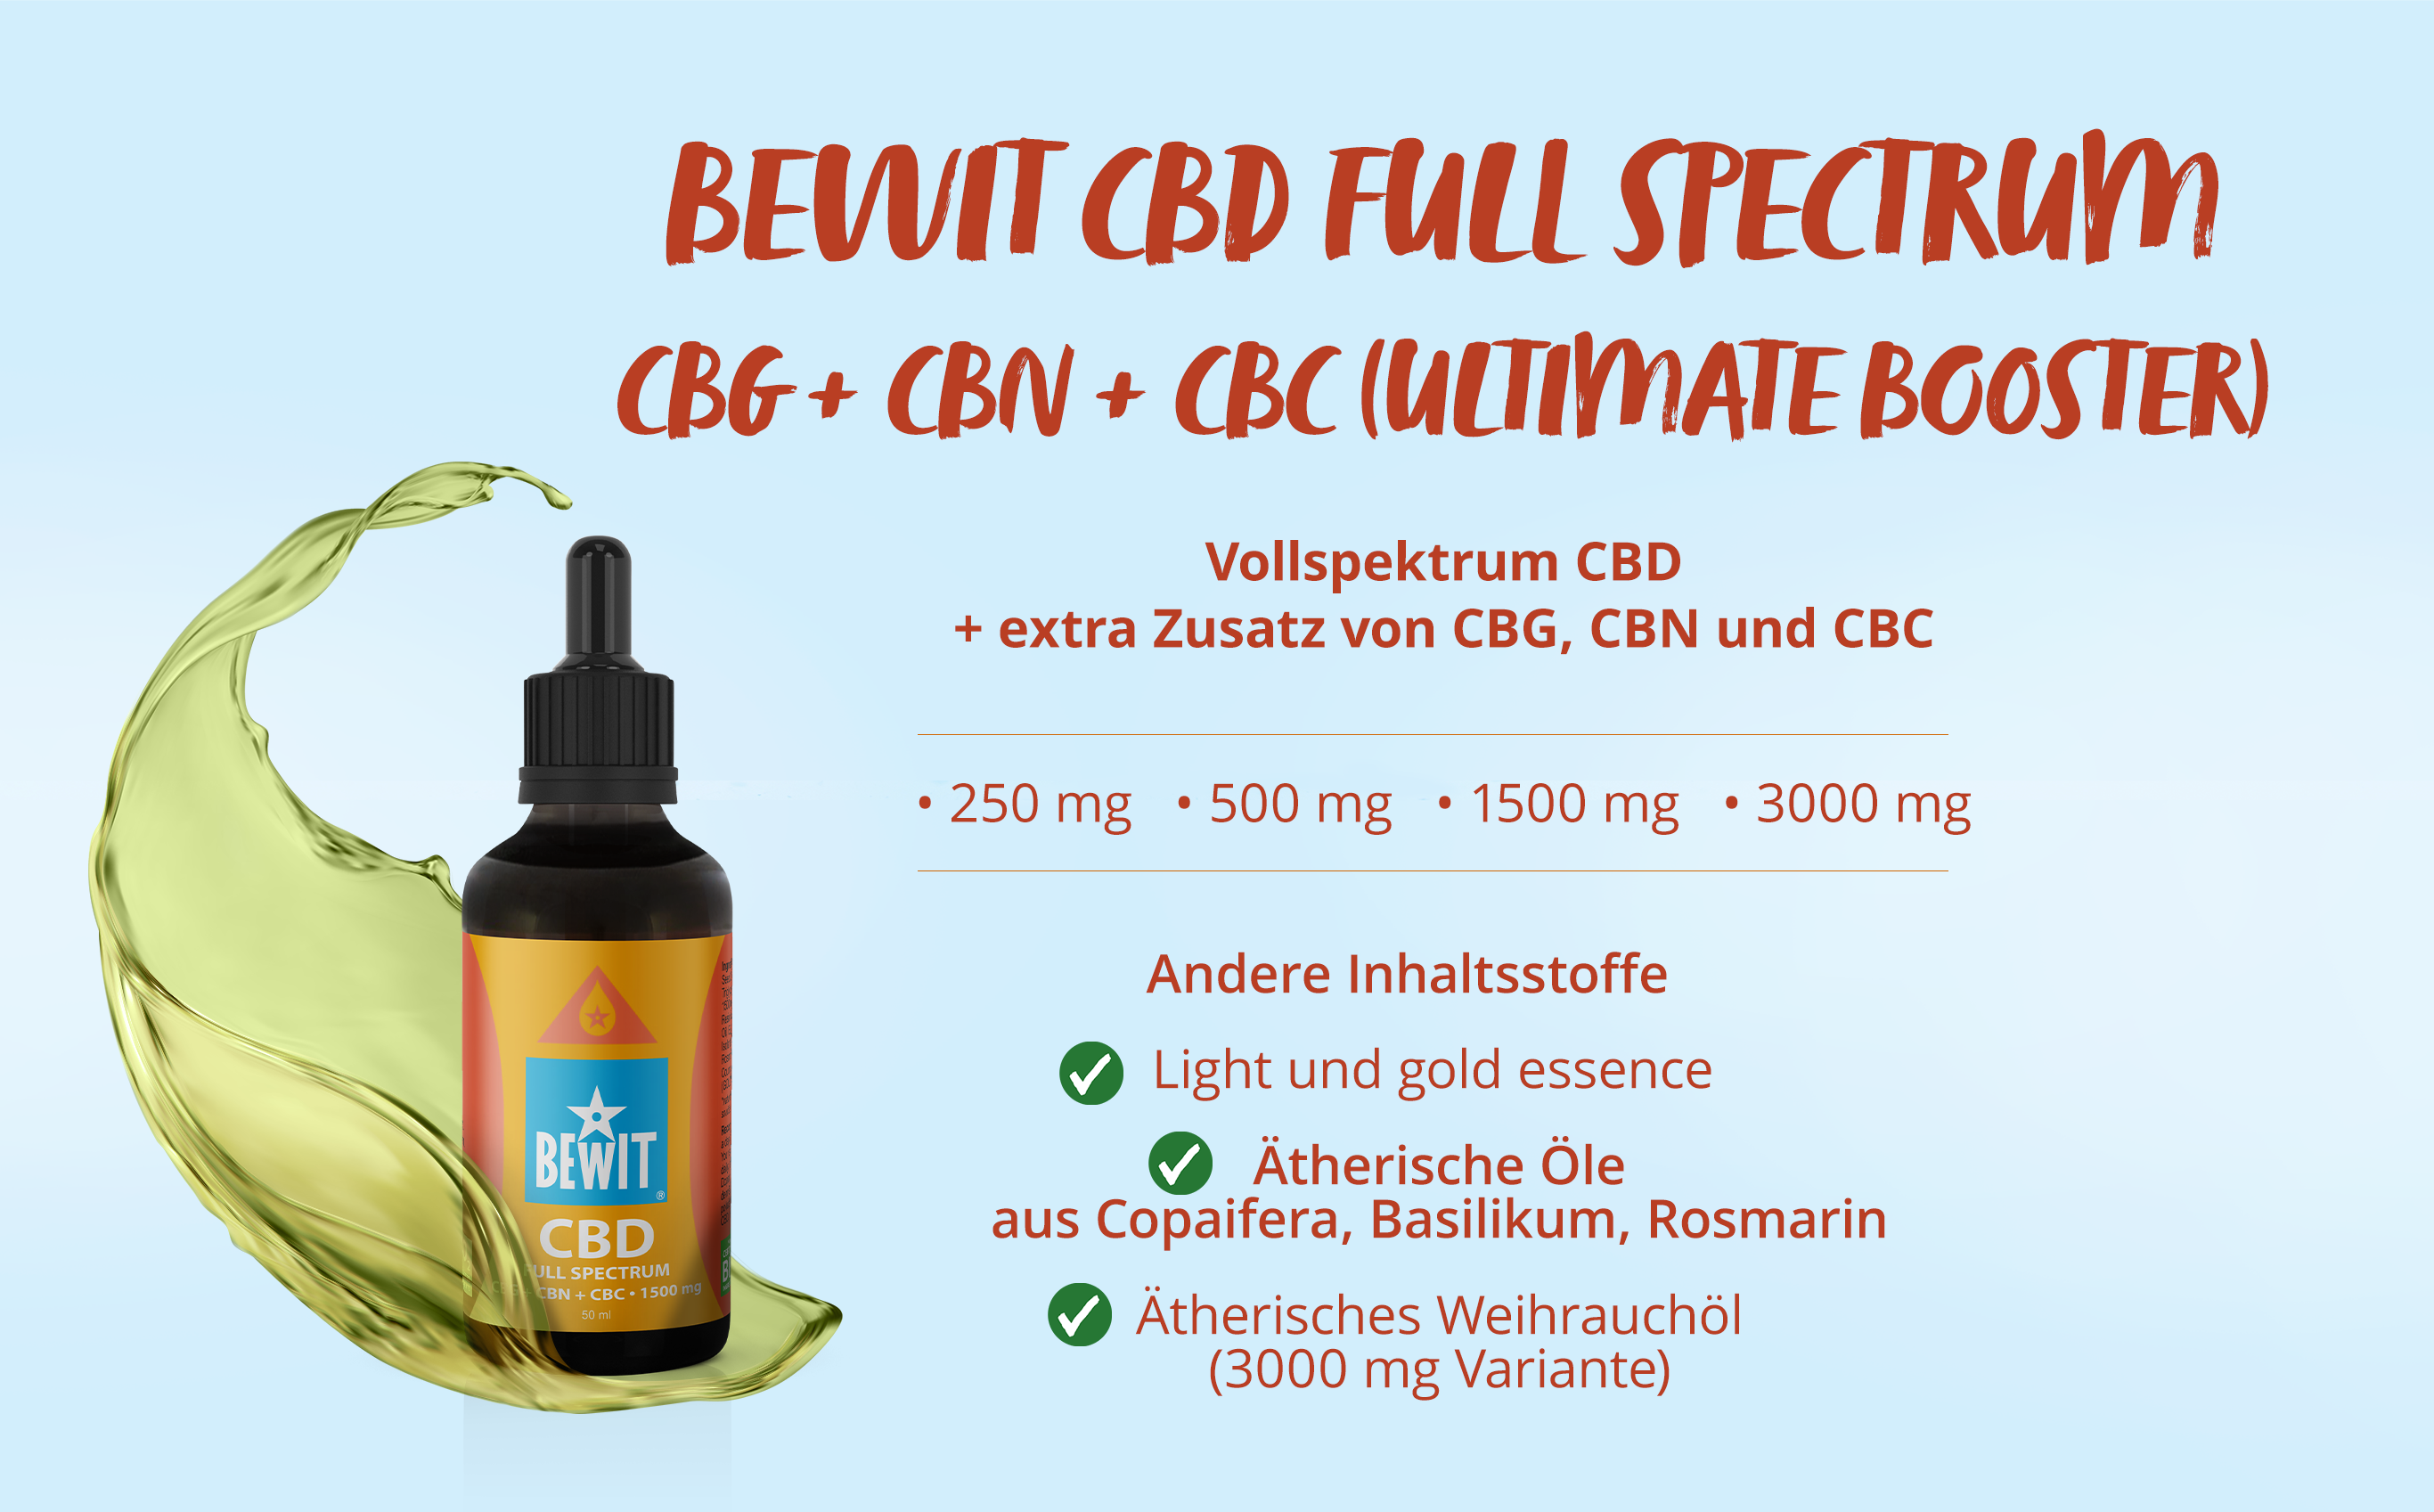 BEWIT CBD FULL SPECTRUM CBG + CBN + CBC 